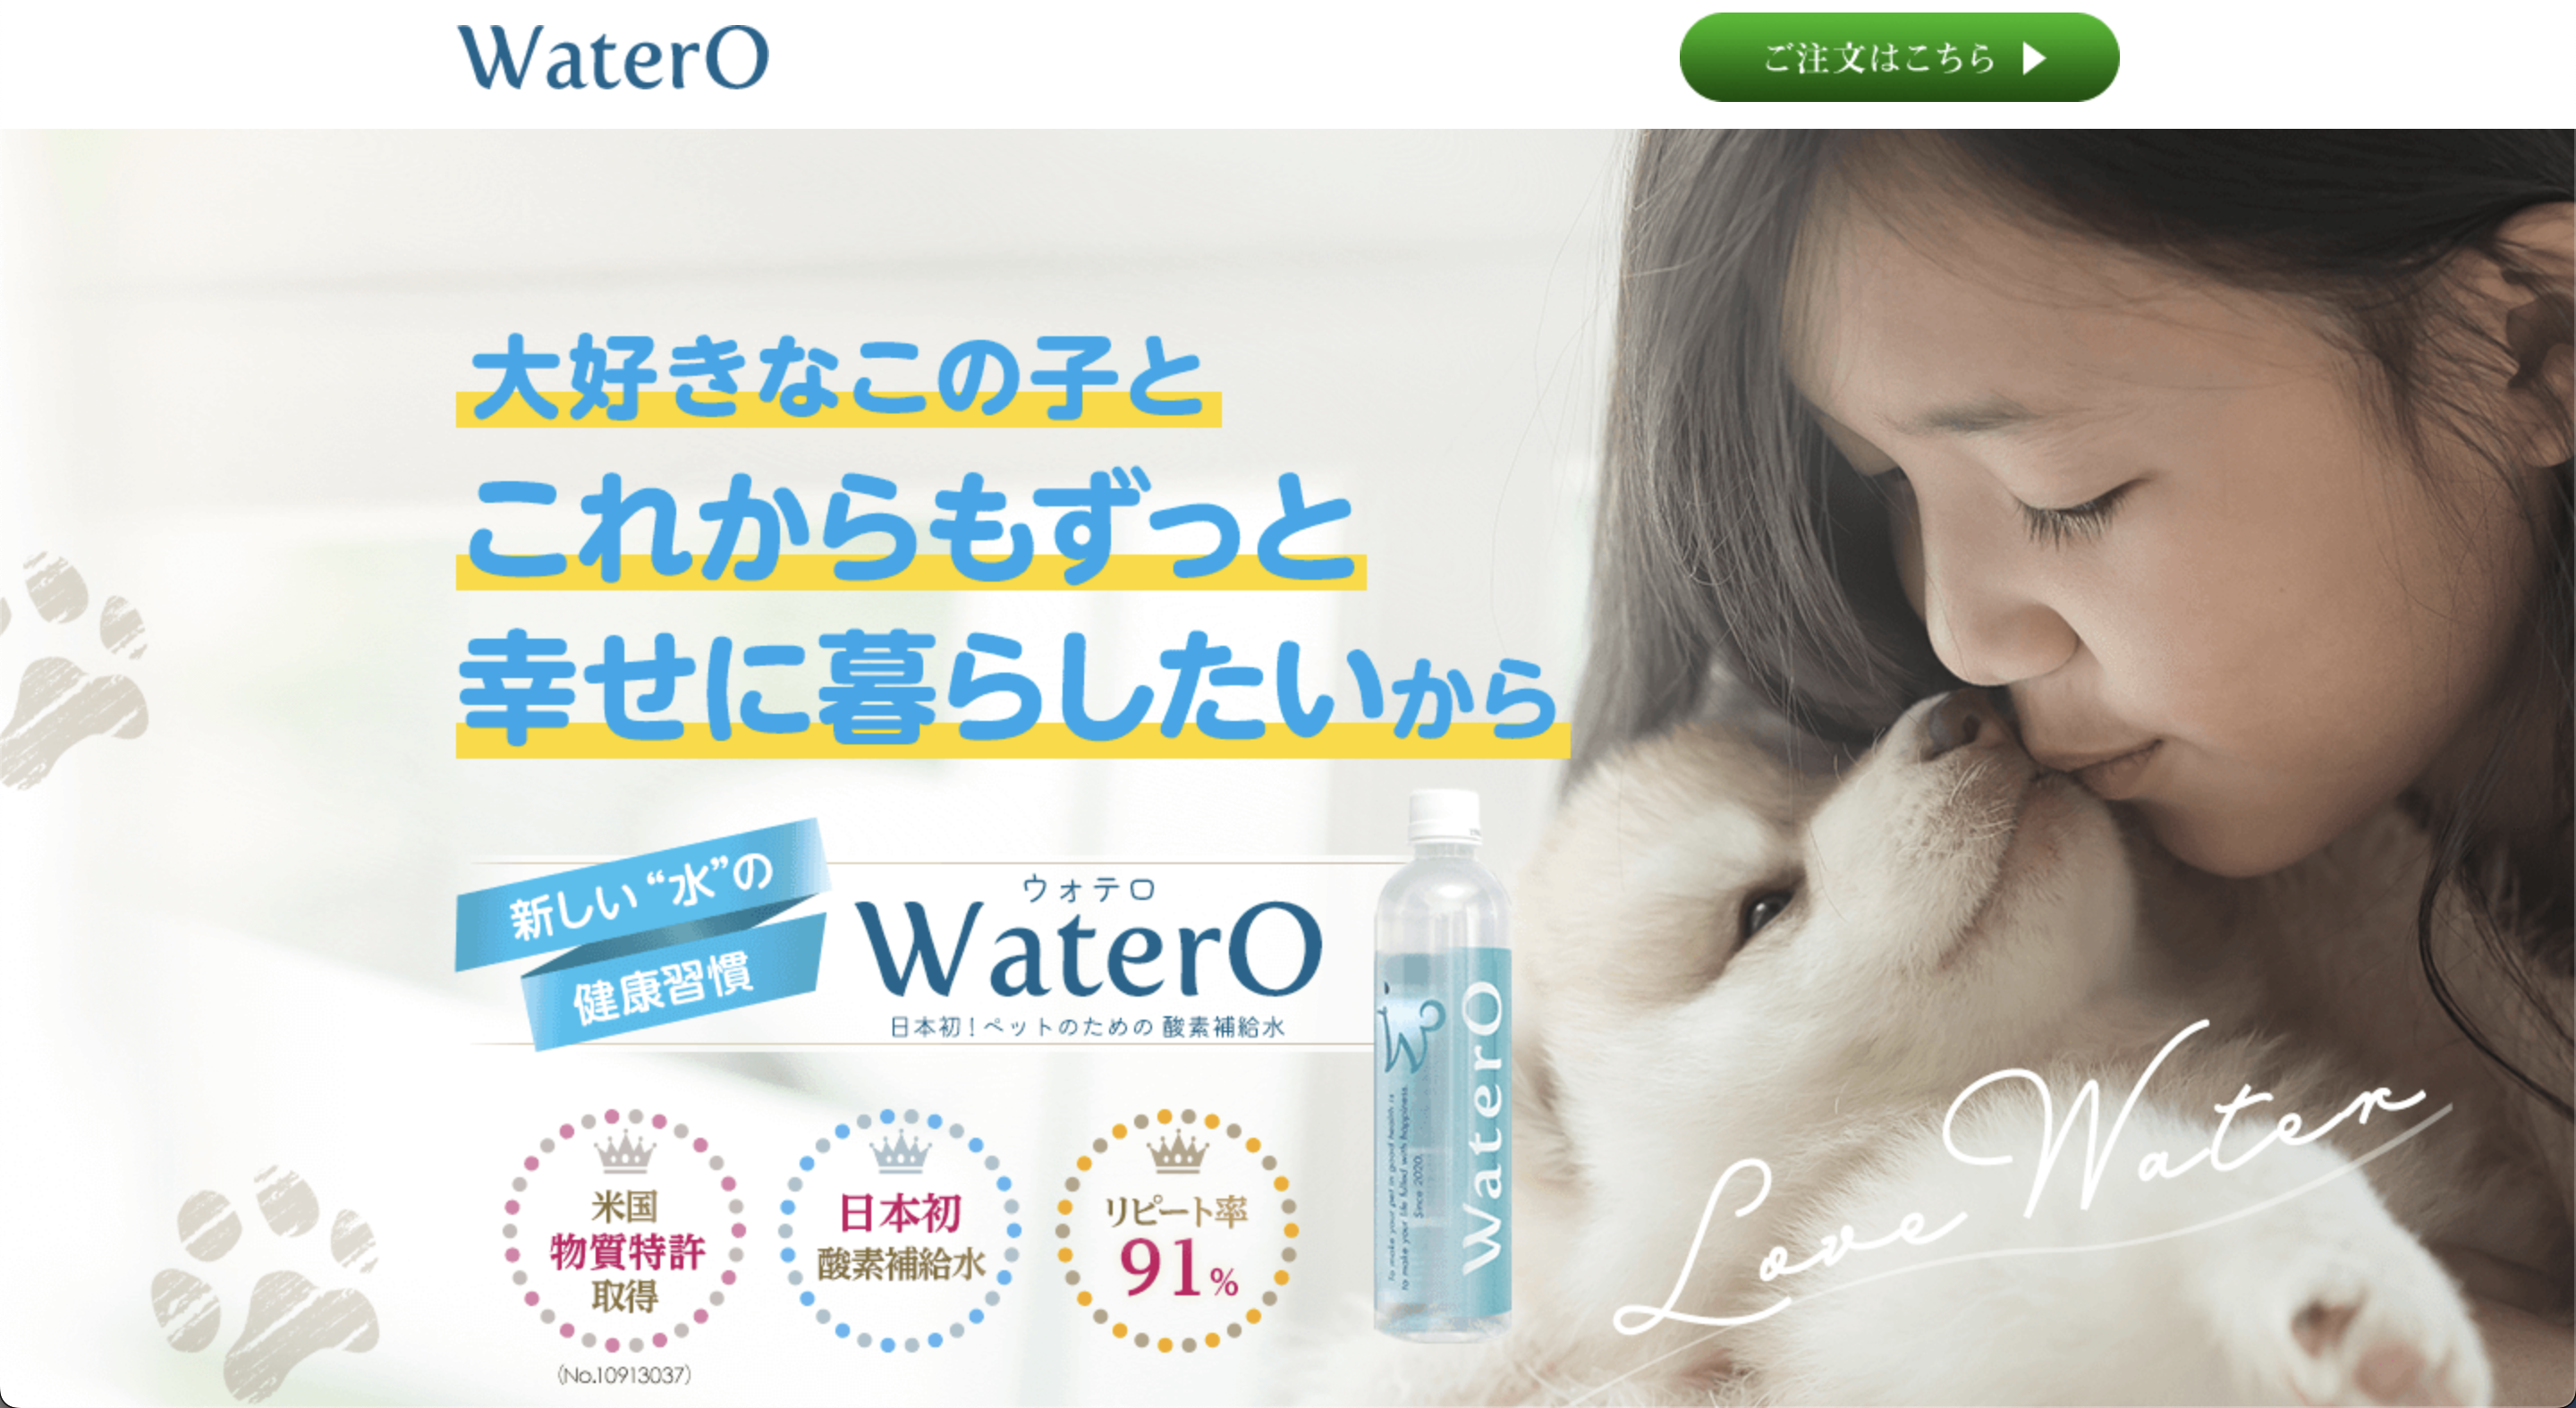 【WaterO(ウォテロ)】口コミと評判・レビュー!初回30%OFFキャンペーン